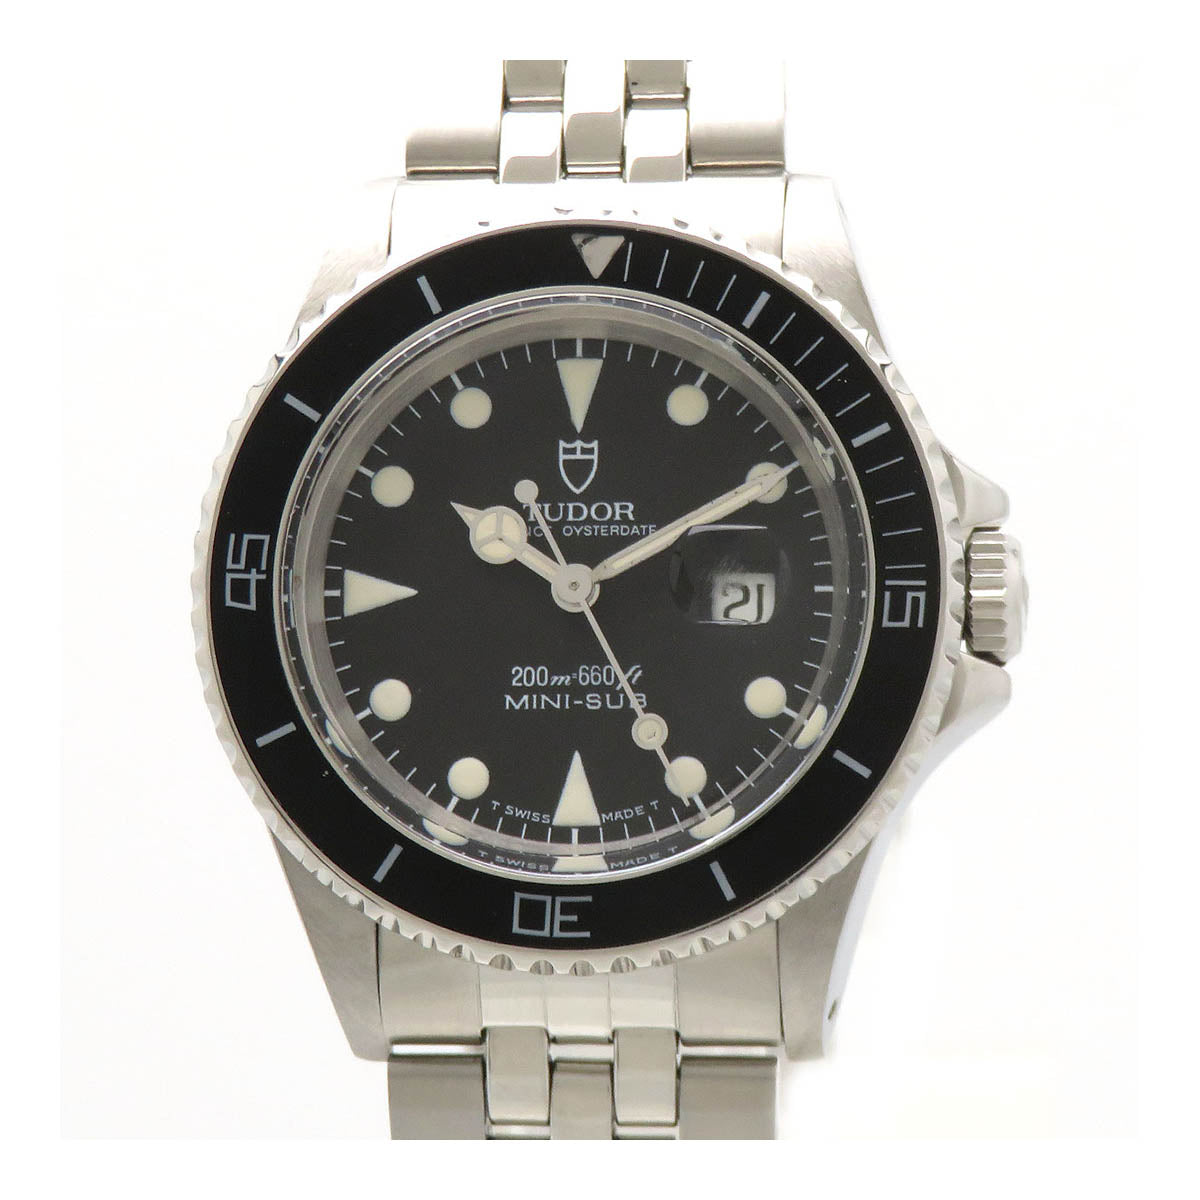 Automatic Prince Oysterdate Mini-Sub Wrist Watch 73090